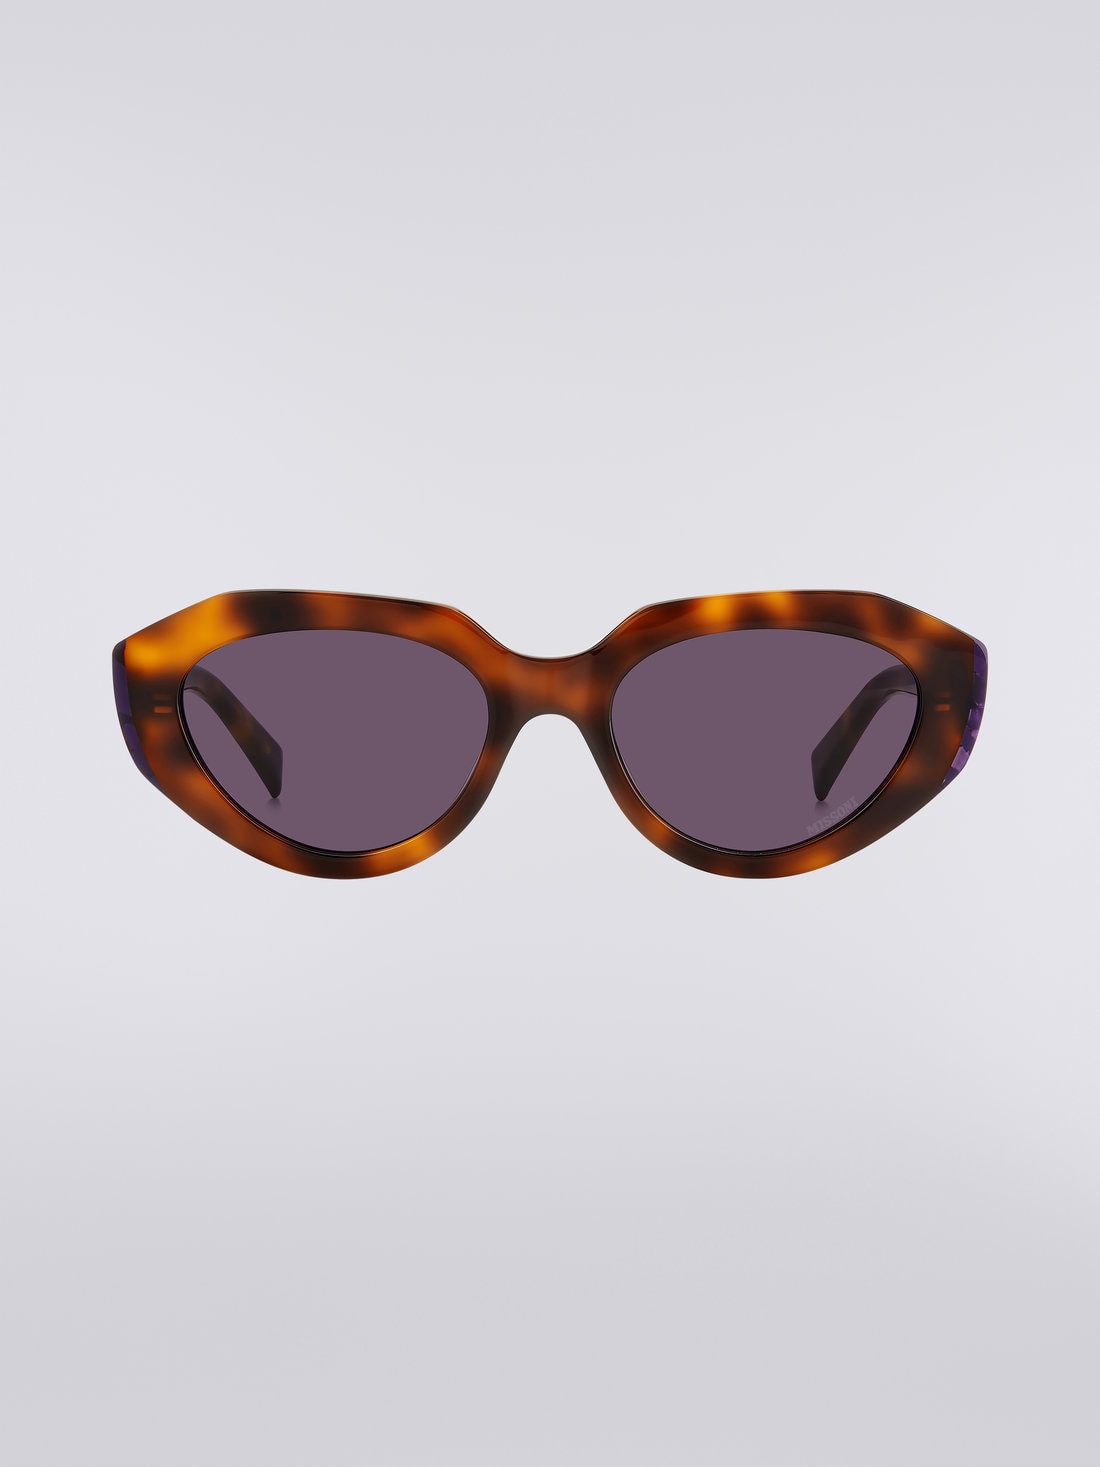 Missoni Seasonal Acetate Sunglasses, Multicoloured  - 8051575840173 - 0